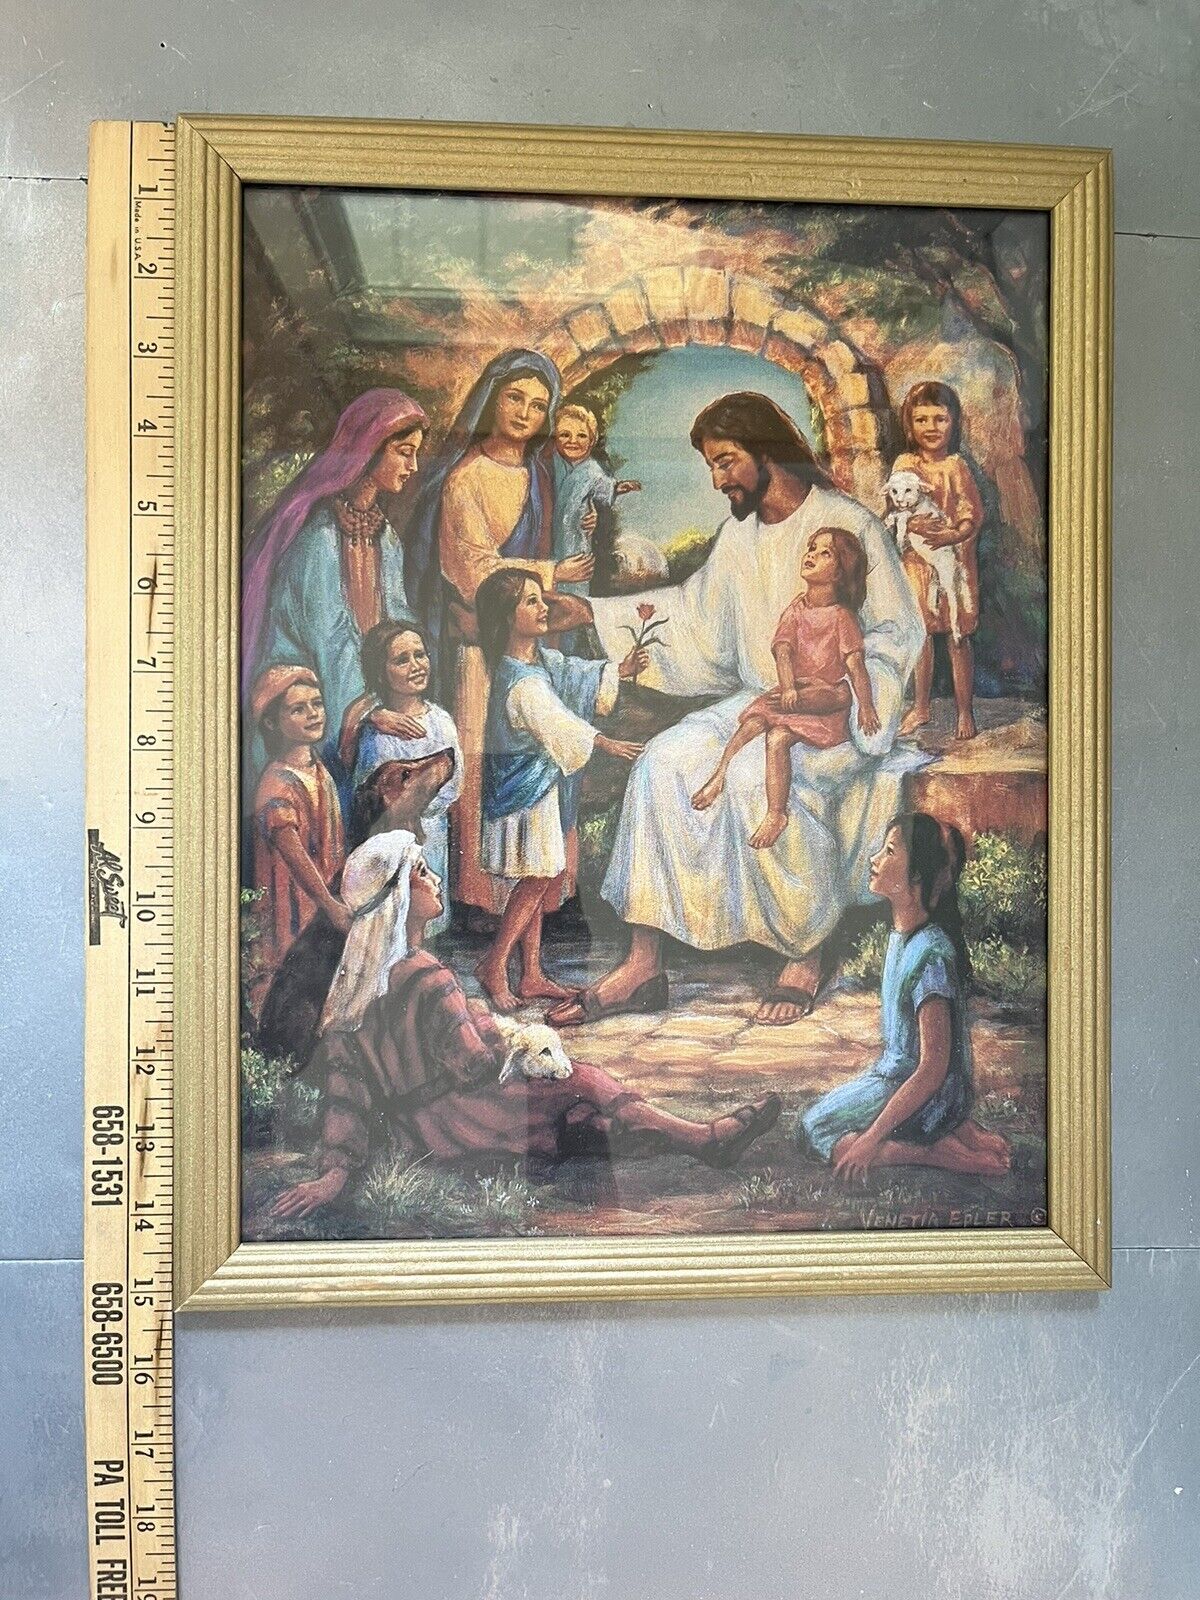 Vintage Jesus Loves The Little Children Framed Print By Venetia Epler